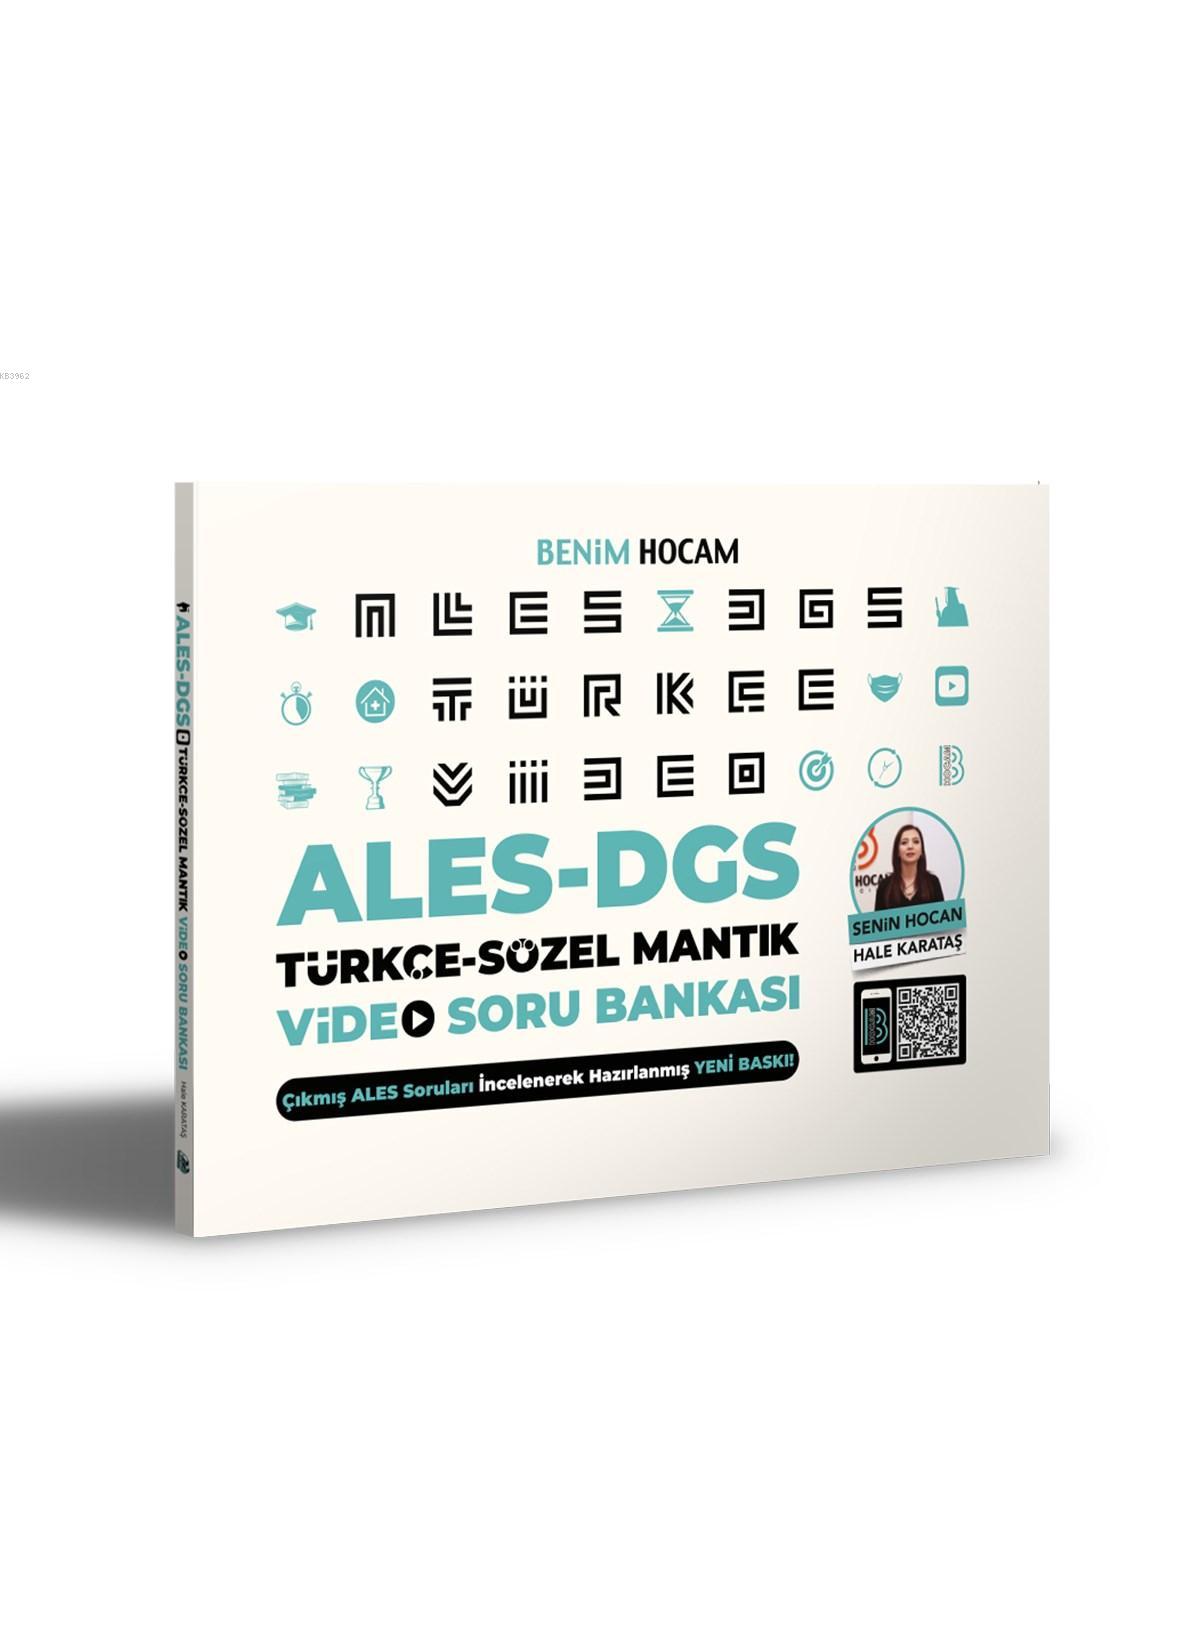 2021 ALES DGS Türkçe-Sözel Mantık Video Soru Bankası Benim Hocam Yayınları